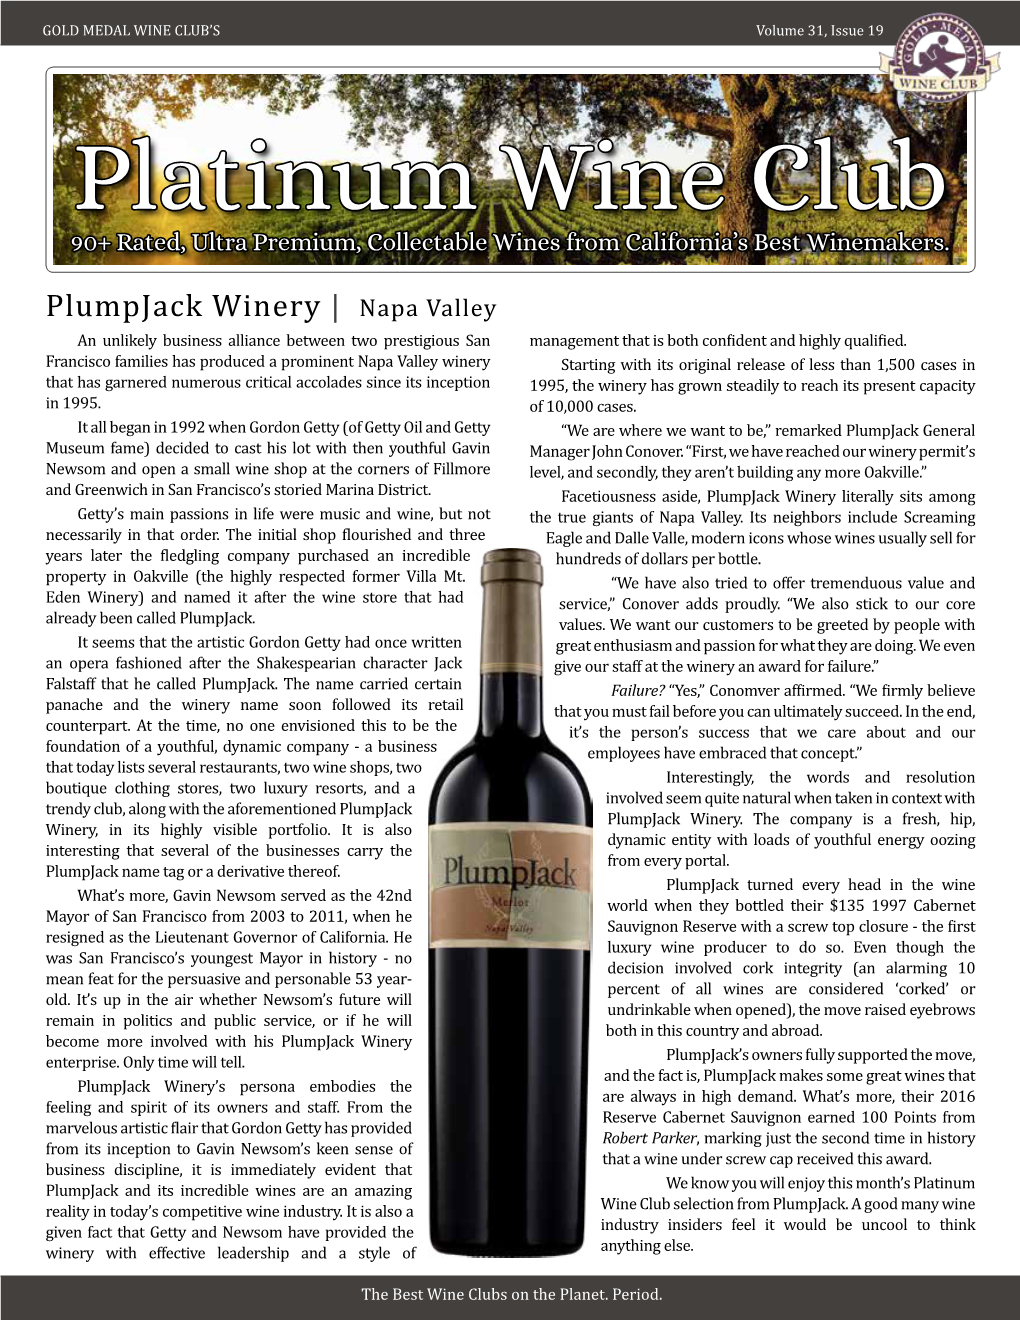 Platinum Plumpjack Winery August 2021 2018